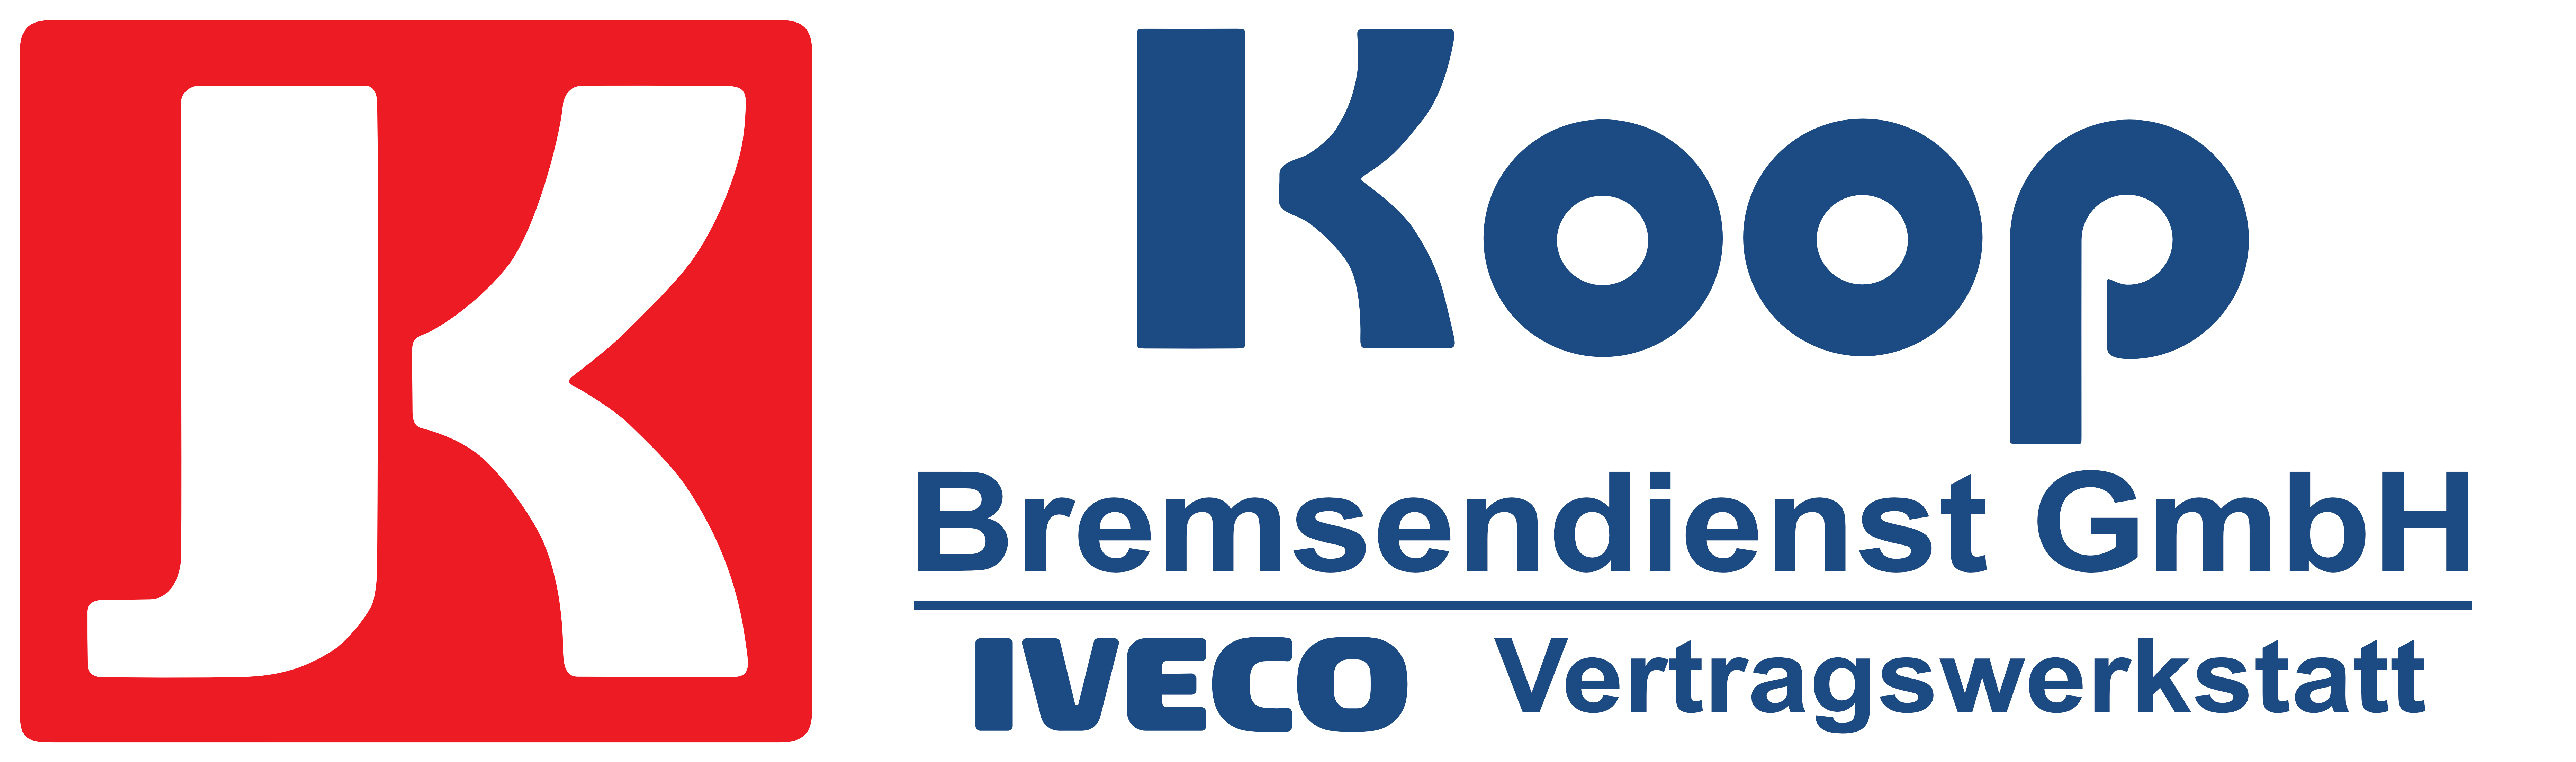 Bremse_Logo